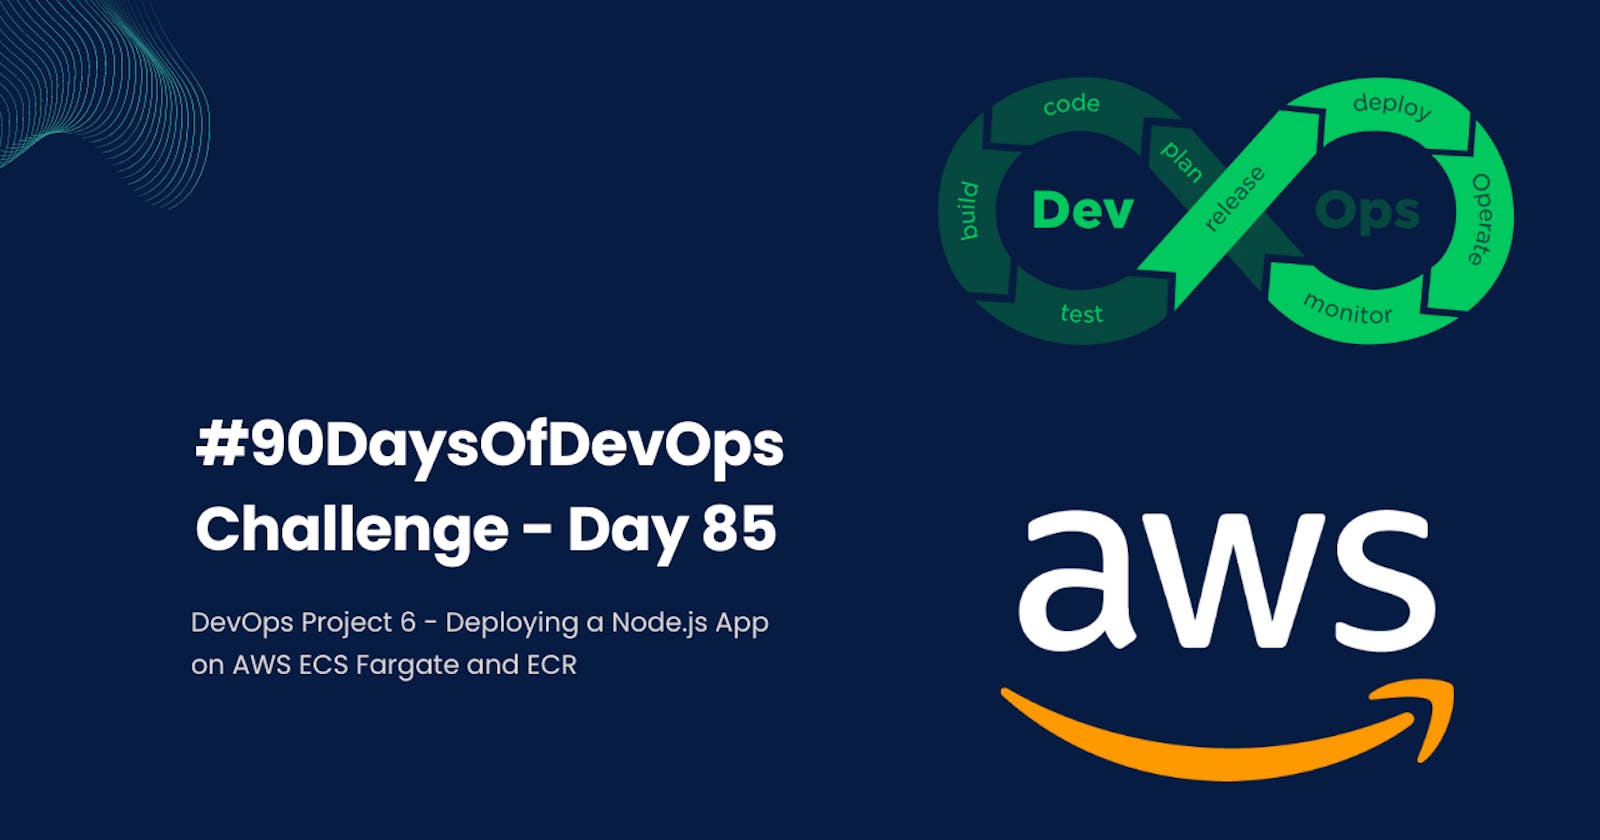 #90DaysOfDevOps Challenge - Day 85 - DevOps Project 6 - Deploying a Node.js App on AWS ECS Fargate and ECR